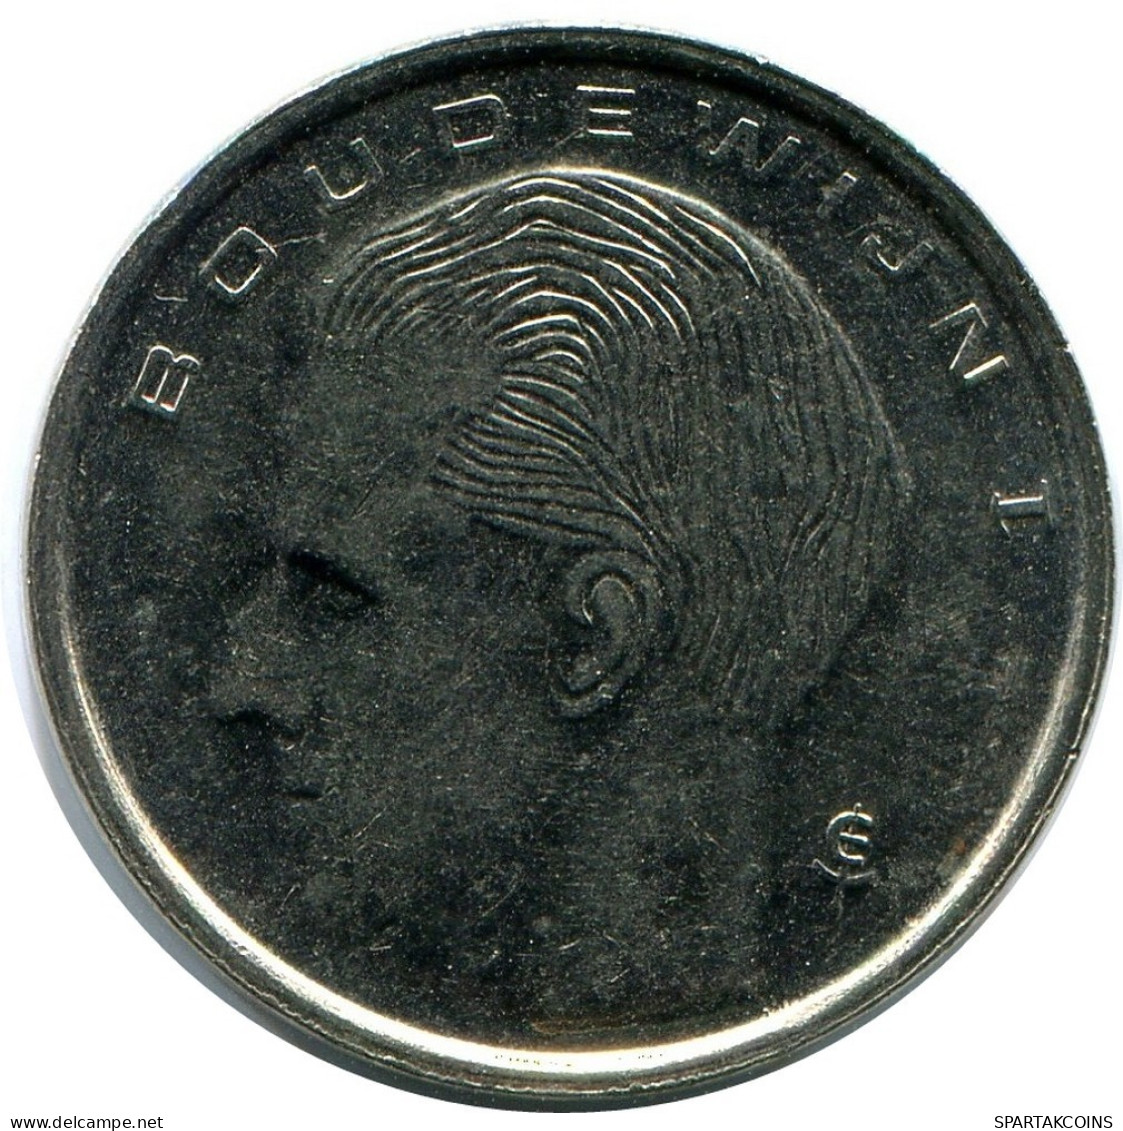 1 FRANC 1989 DUTCH Text BELGIUM Coin #AZ348.U.A - 1 Franc